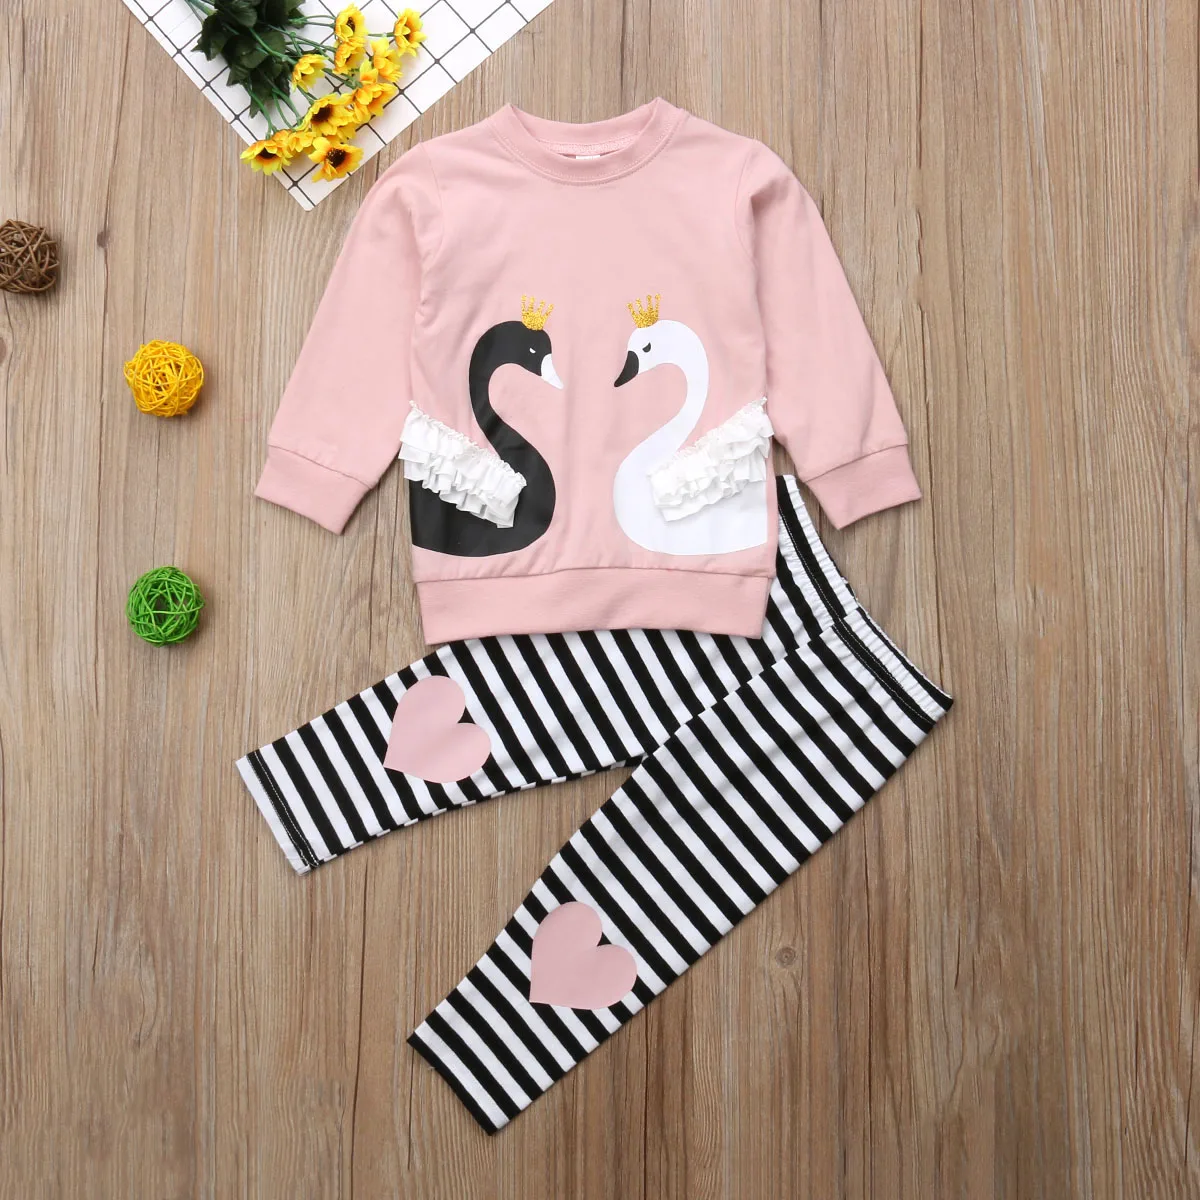 От 1 до 6 лет-осенние милые комплекты одежды для маленьких девочек 2 предмета, пуловер с длинными рукавами и принтом лебедя розовый свитер+ штаны в полоску